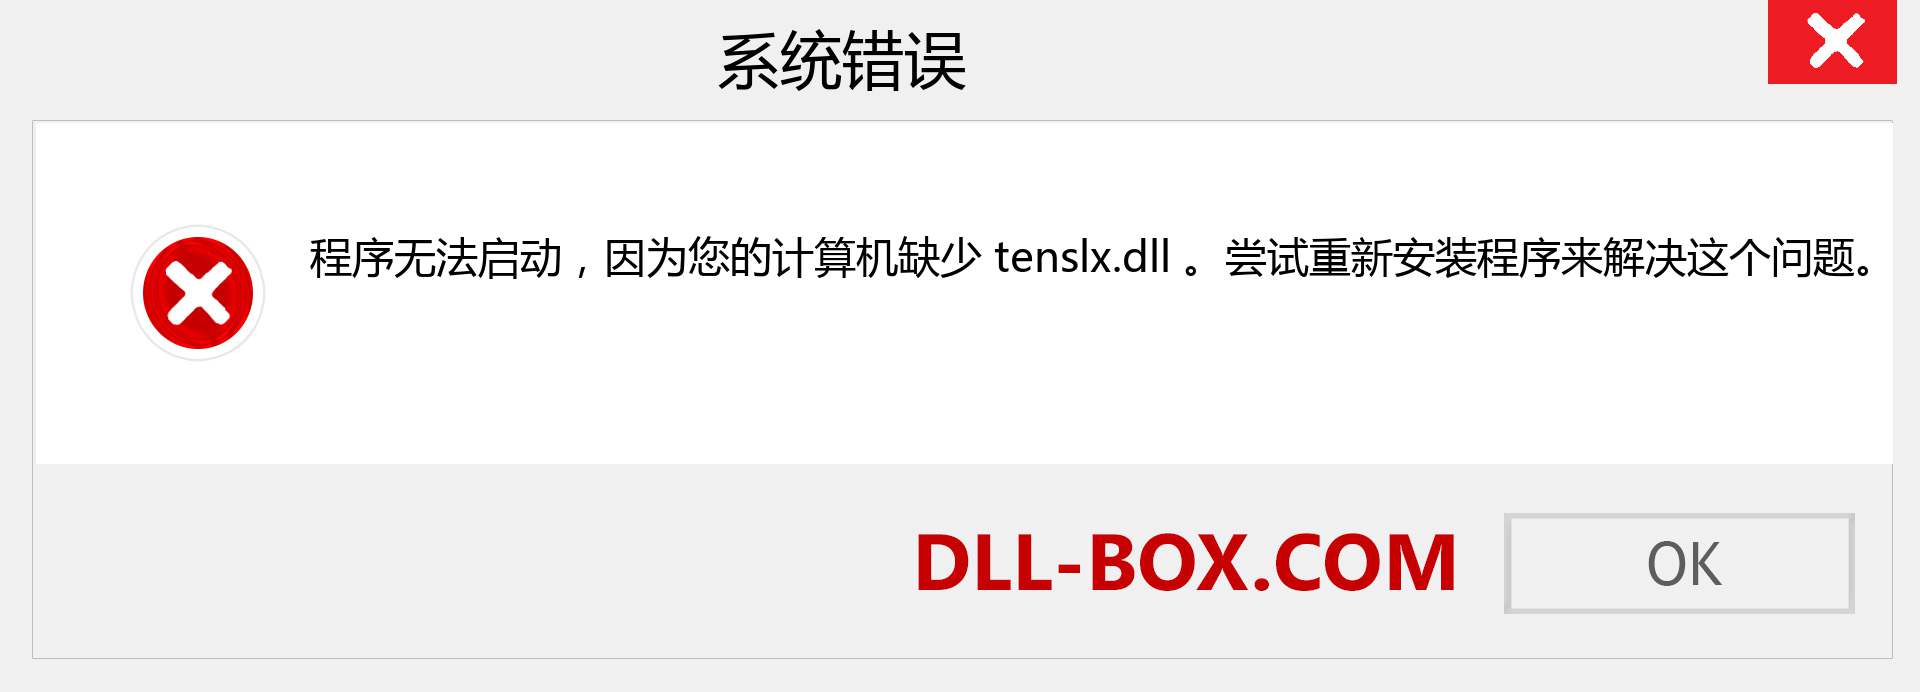 tenslx.dll 文件丢失？。 适用于 Windows 7、8、10 的下载 - 修复 Windows、照片、图像上的 tenslx dll 丢失错误